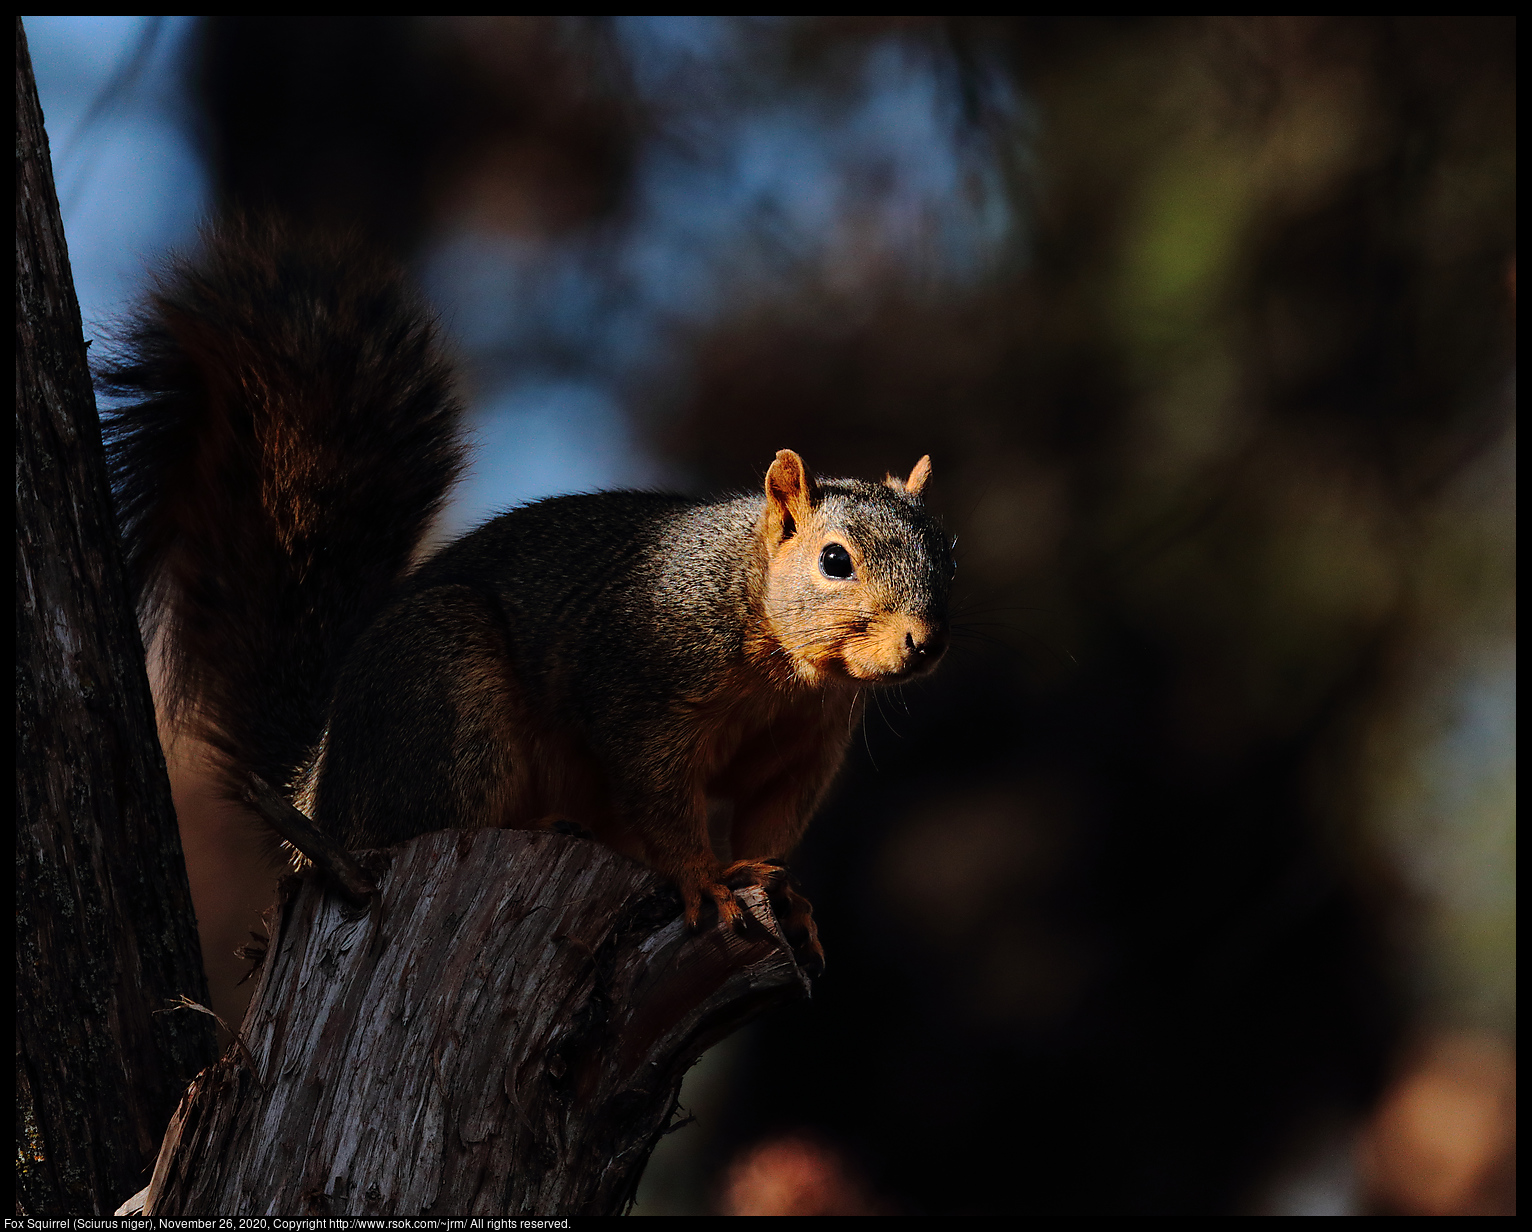 Fox Squirrel (Sciurus niger), November 26, 2020